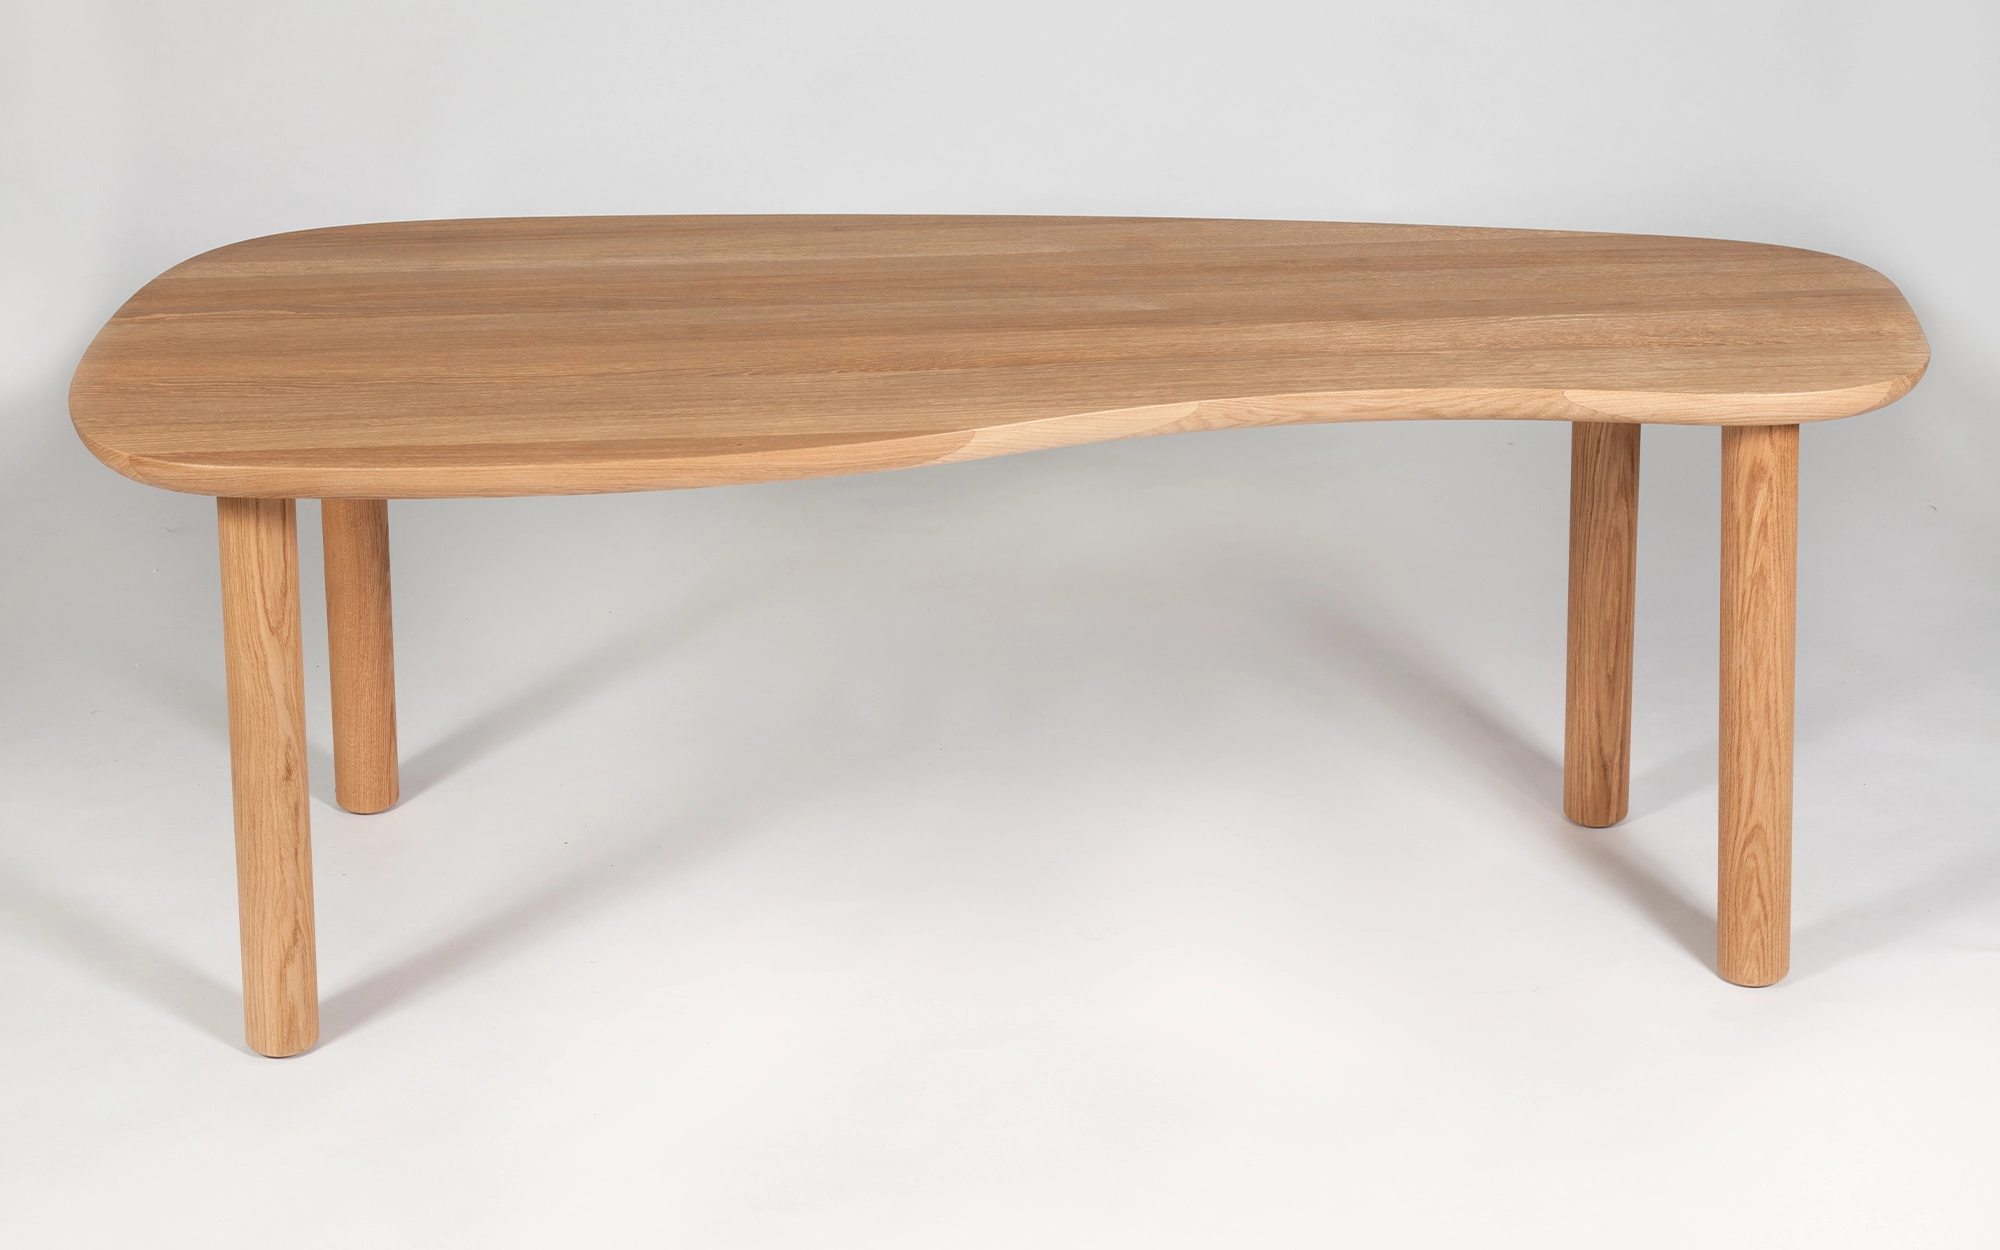 DOOW4L Desk - Jasper Morrison - Desk - Galerie kreo